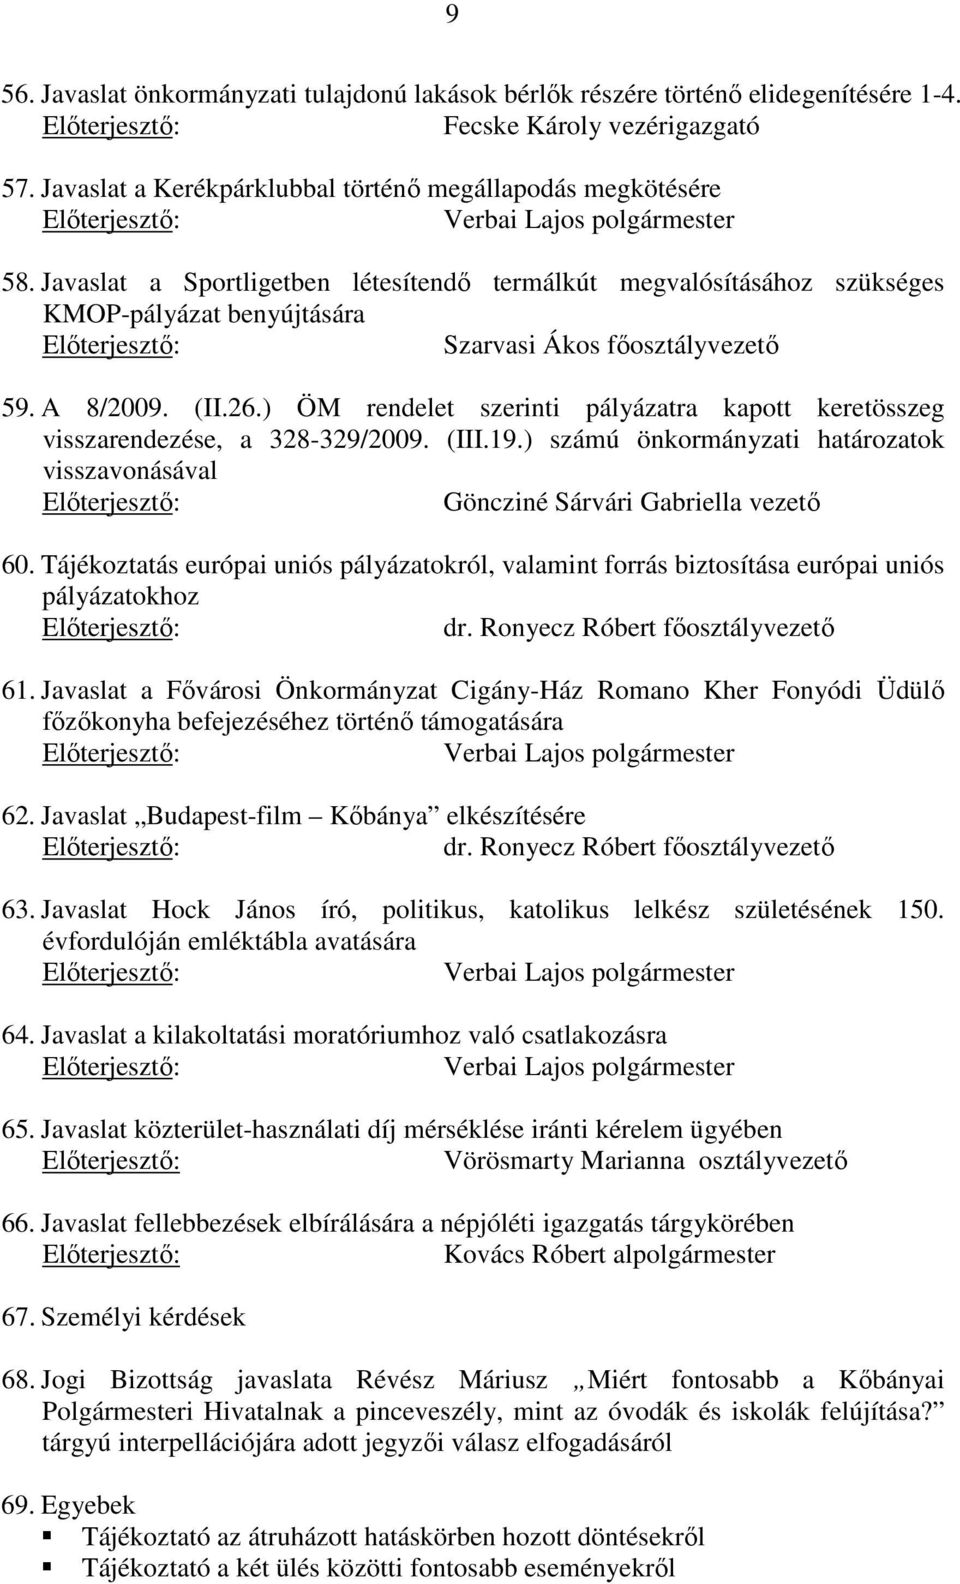 ) ÖM rendelet szerinti pályázatra kapott keretösszeg visszarendezése, a 328-329/2009. (III.19.) számú önkormányzati határozatok visszavonásával Göncziné Sárvári Gabriella vezető 60.